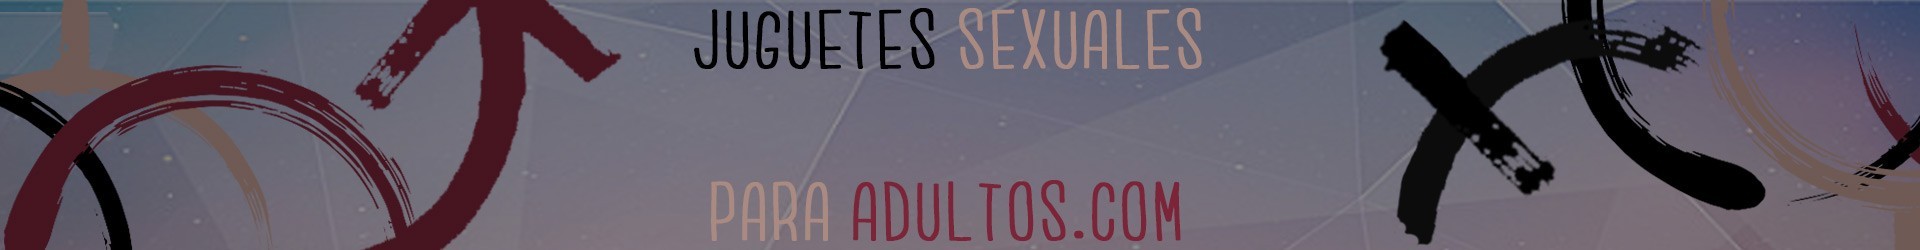 Aumenta semen en Sex Shop Juguetes Sexuales para Adultos